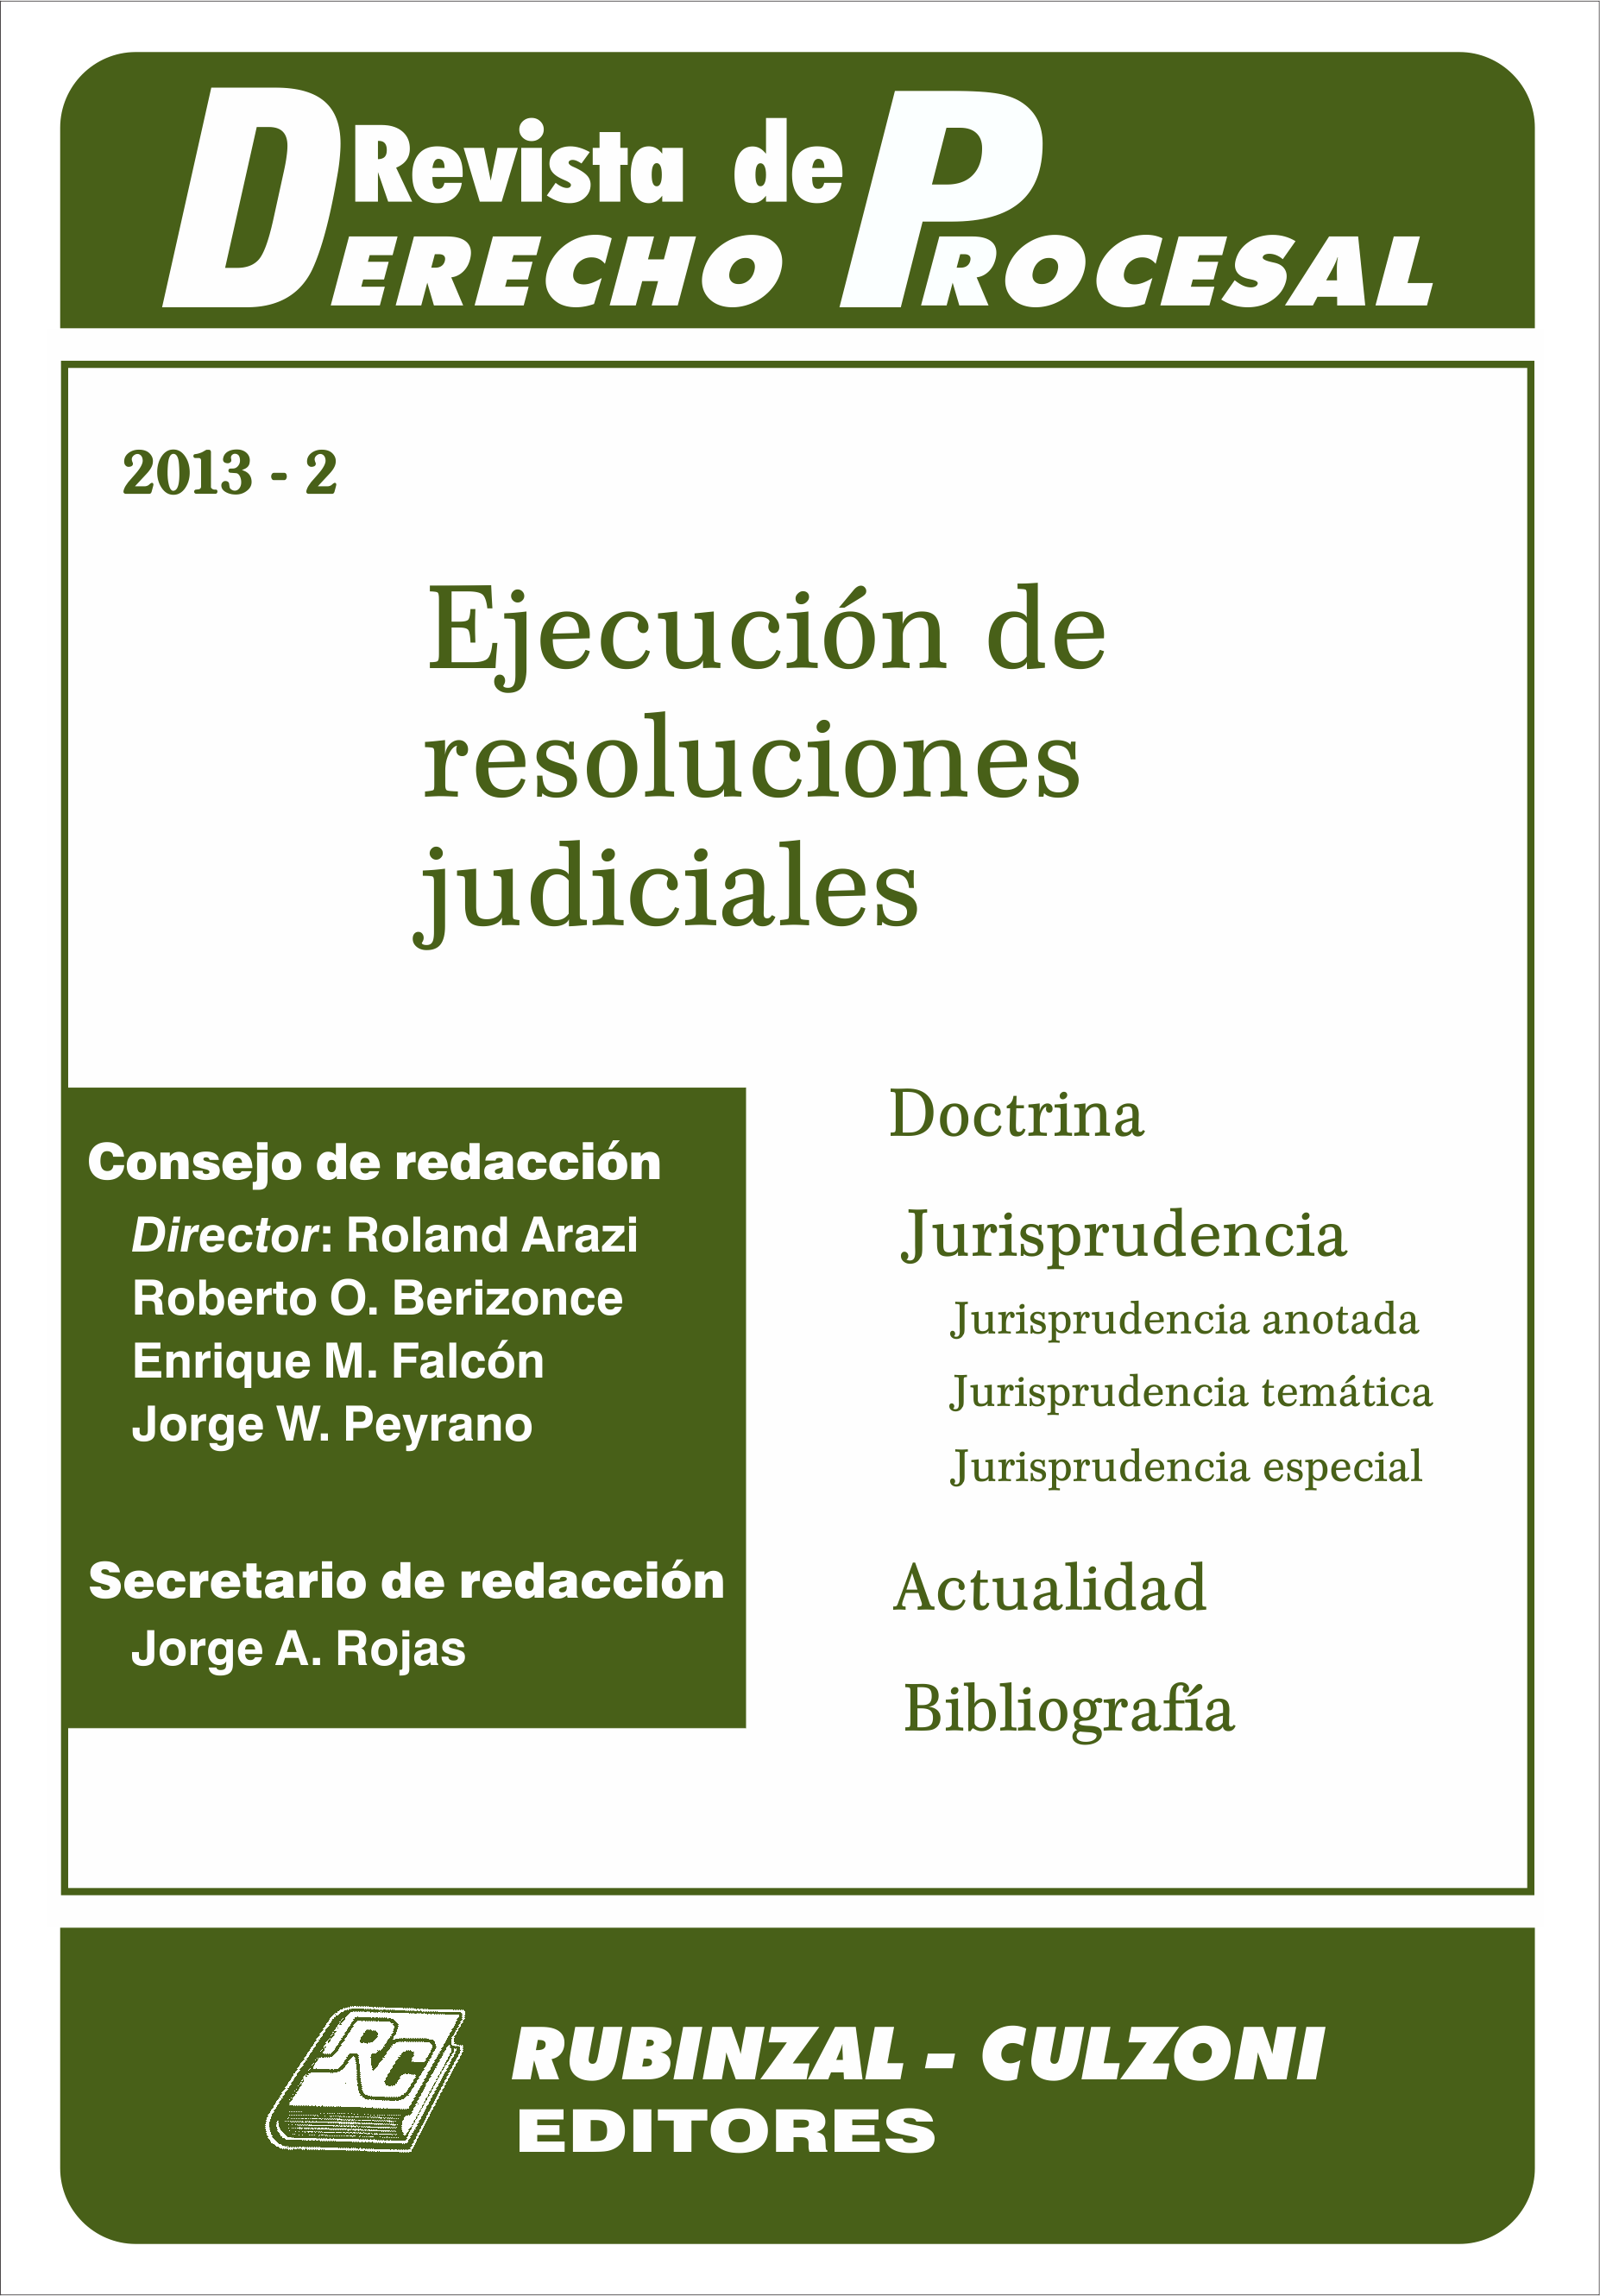 Revista de Derecho Procesal - Ejecución de resoluciones judiciales